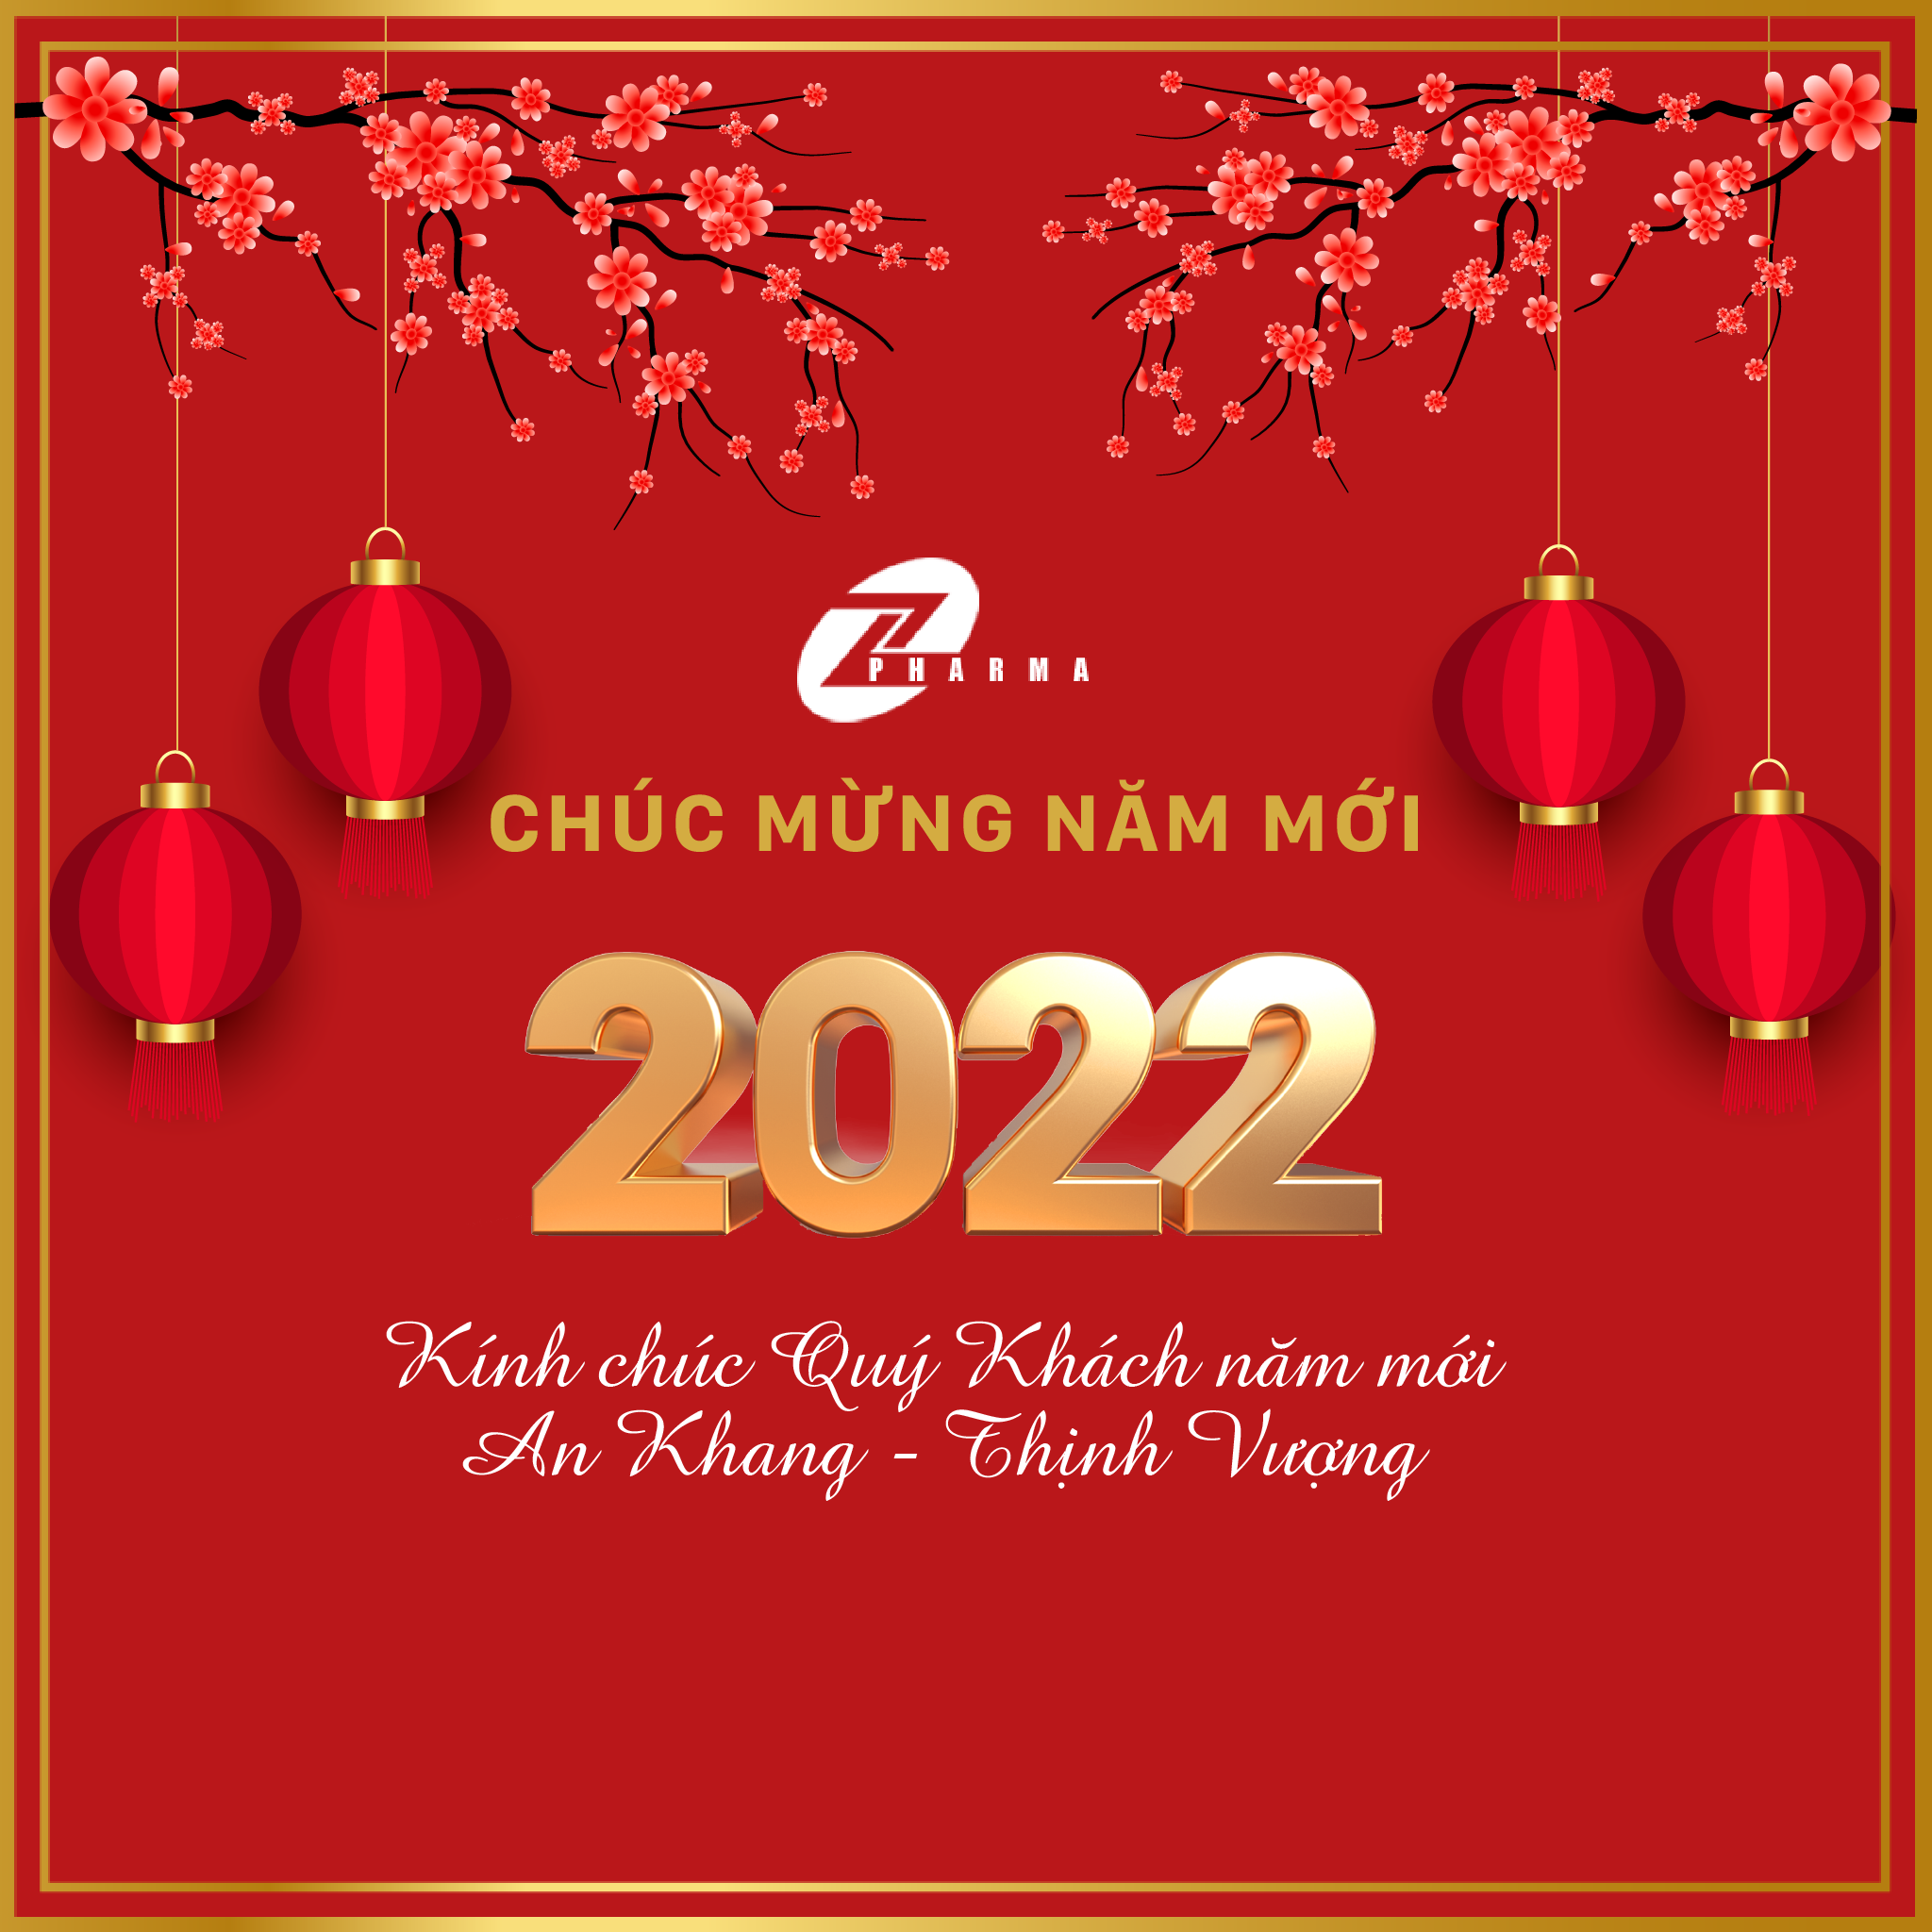 Dược phẩm Tùng Linh, chúc mừng năm mới 2022